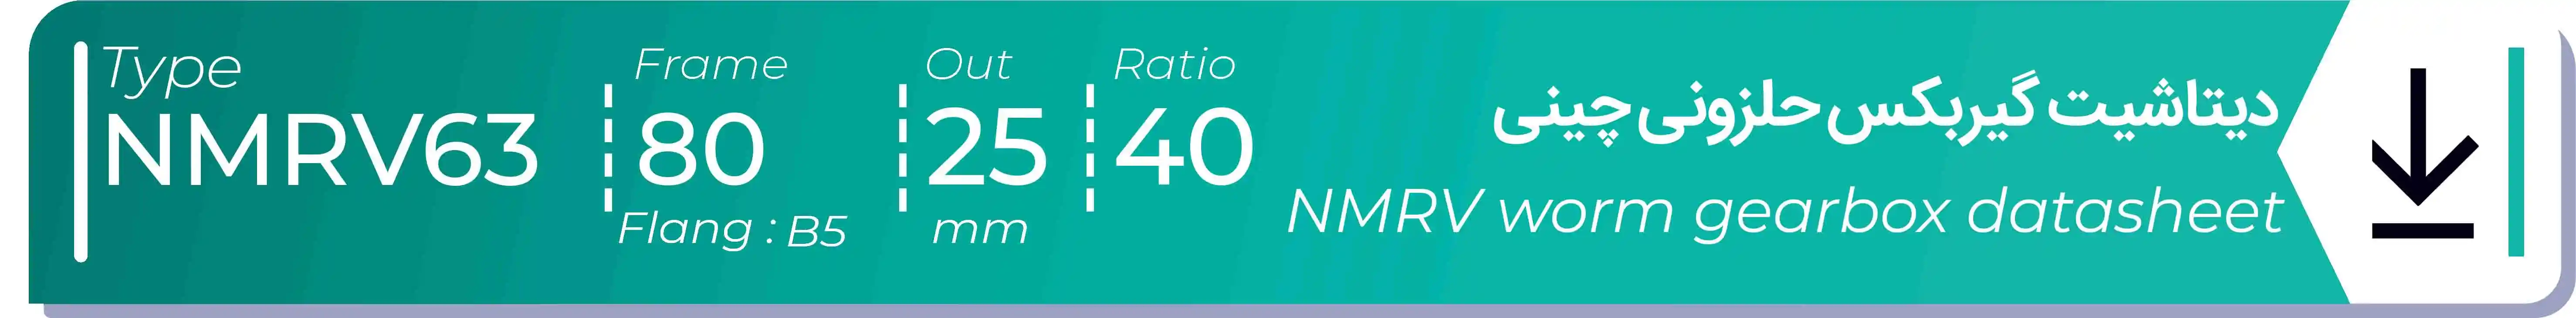  دیتاشیت و مشخصات فنی گیربکس حلزونی چینی   NMRV63  -  با خروجی 25- میلی متر و نسبت40 و فریم 80